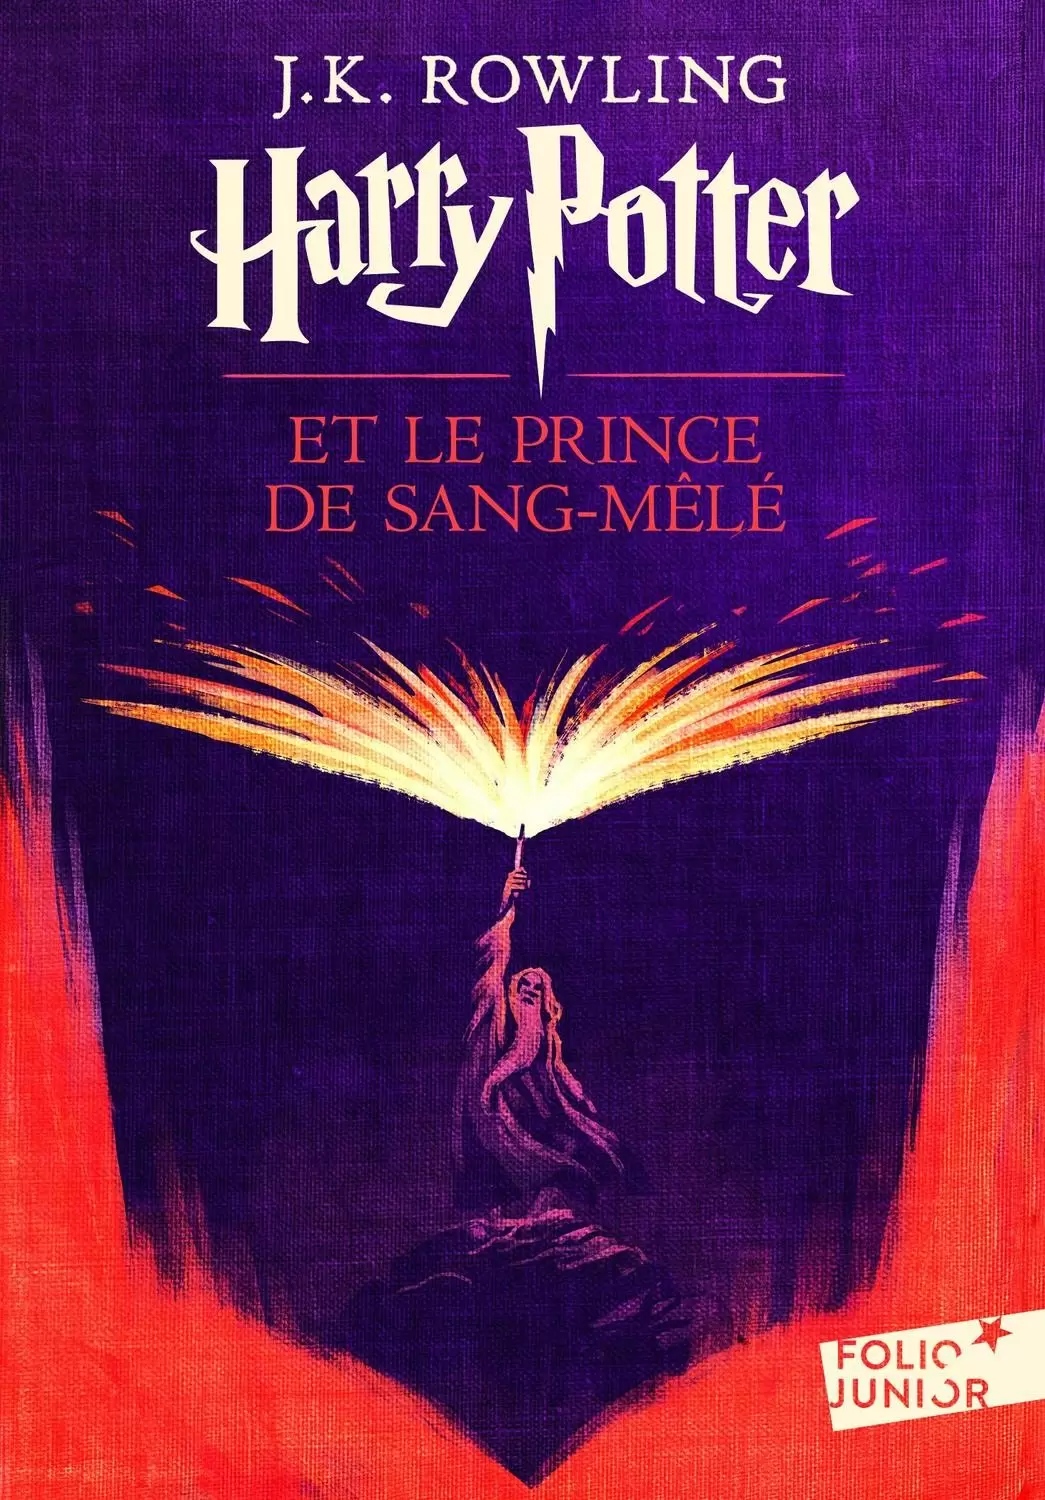 Livres Harry Potter et Animaux Fantastiques - Harry Potter et le prince de sang-mele